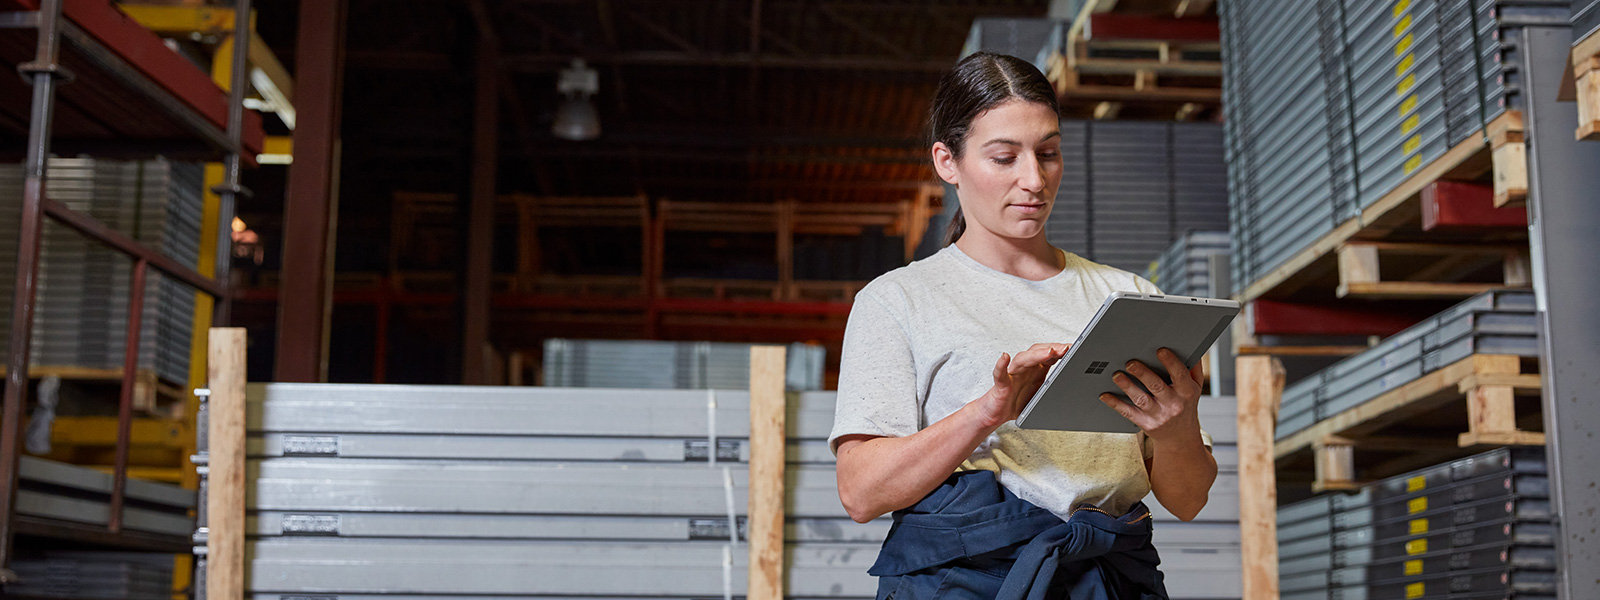 Žena ve výrobním prostředí drží zařízení Surface Pro